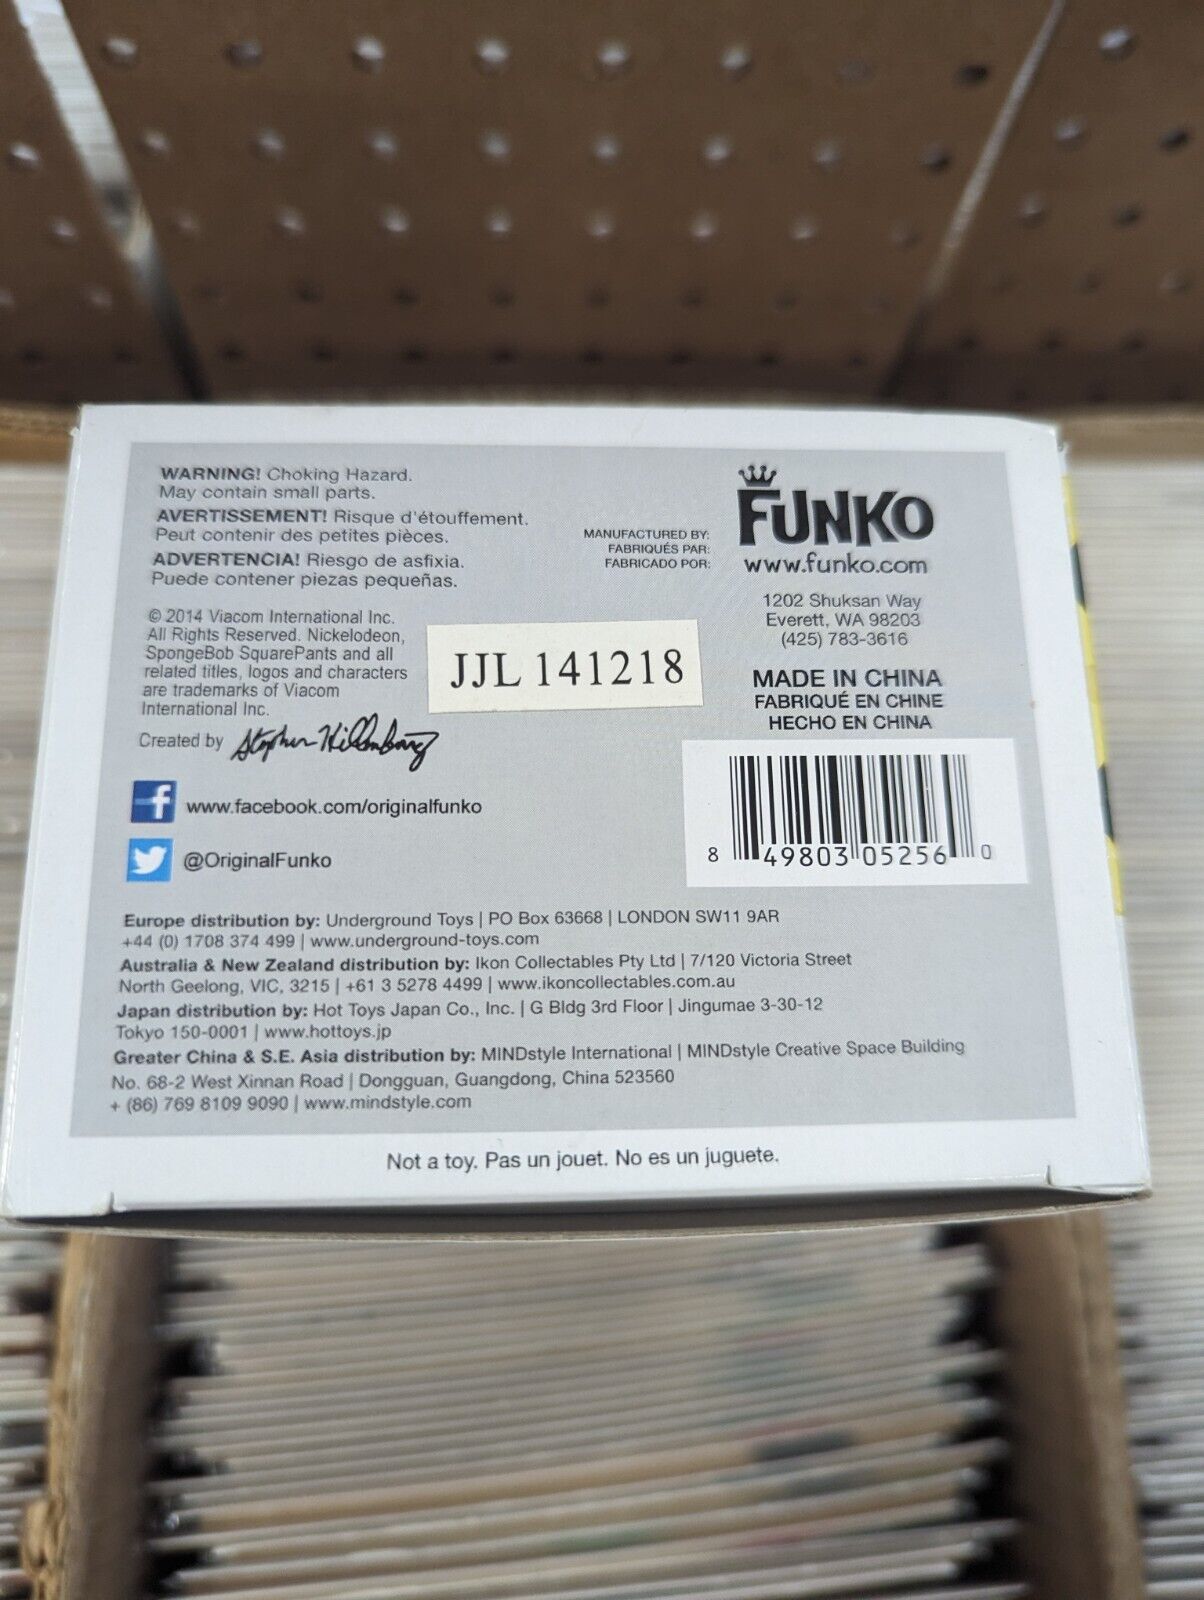 Funko Pop SpongeBob SquarePants 25 Amazon Exclusive Gold